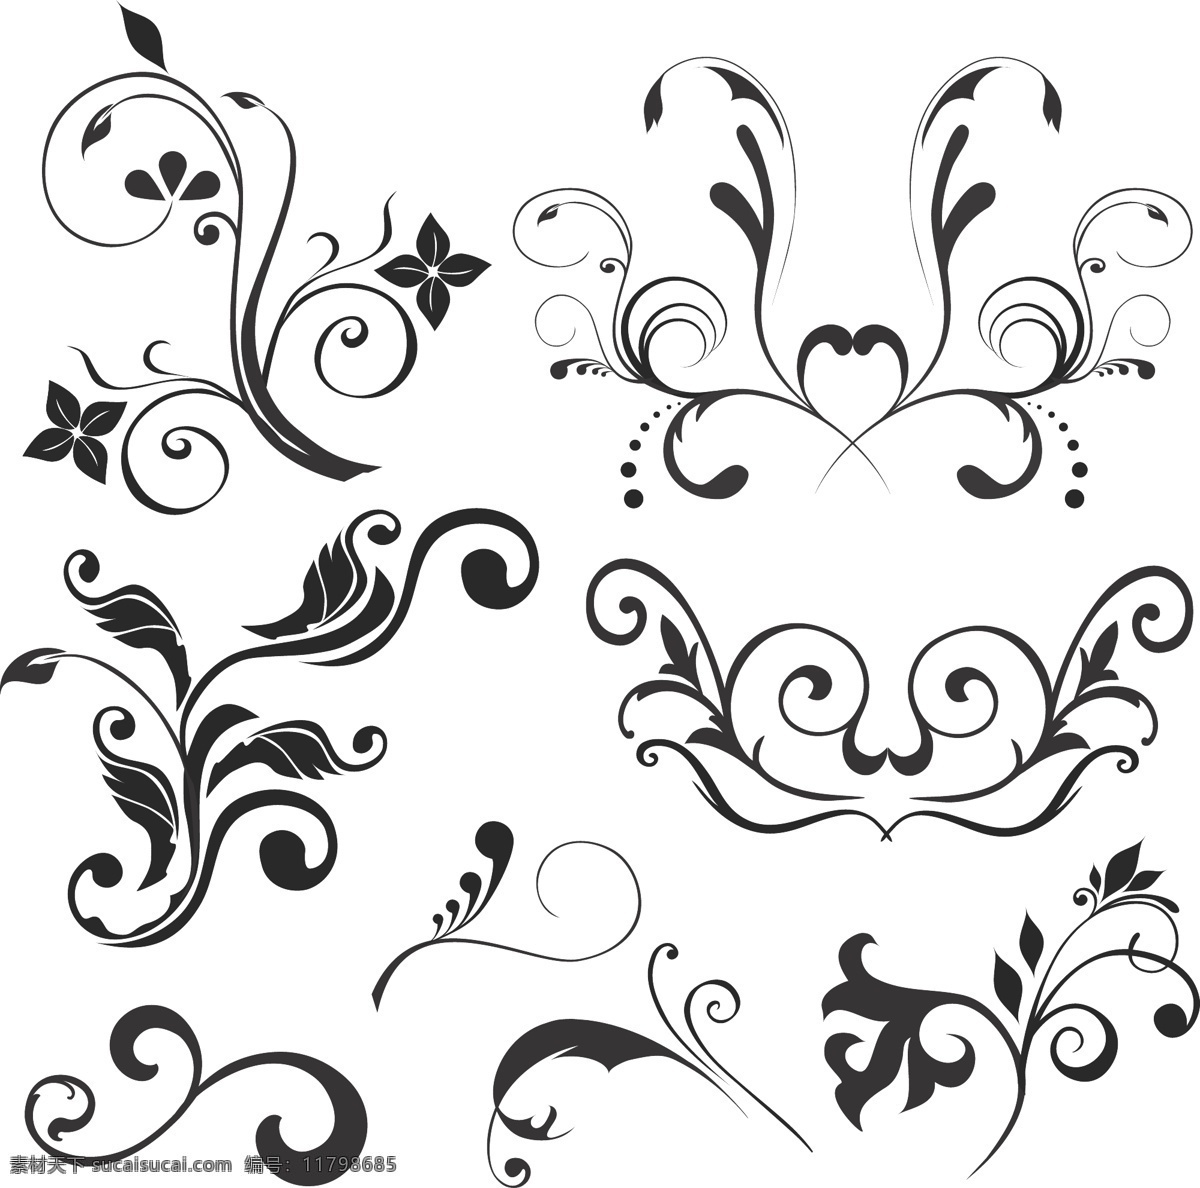 单色 花纹 矢量 设计素材 单色花纹 花纹样式 模板 设计稿 矢量设计 素材元素 图案设计 植物花纹 源文件 矢量图